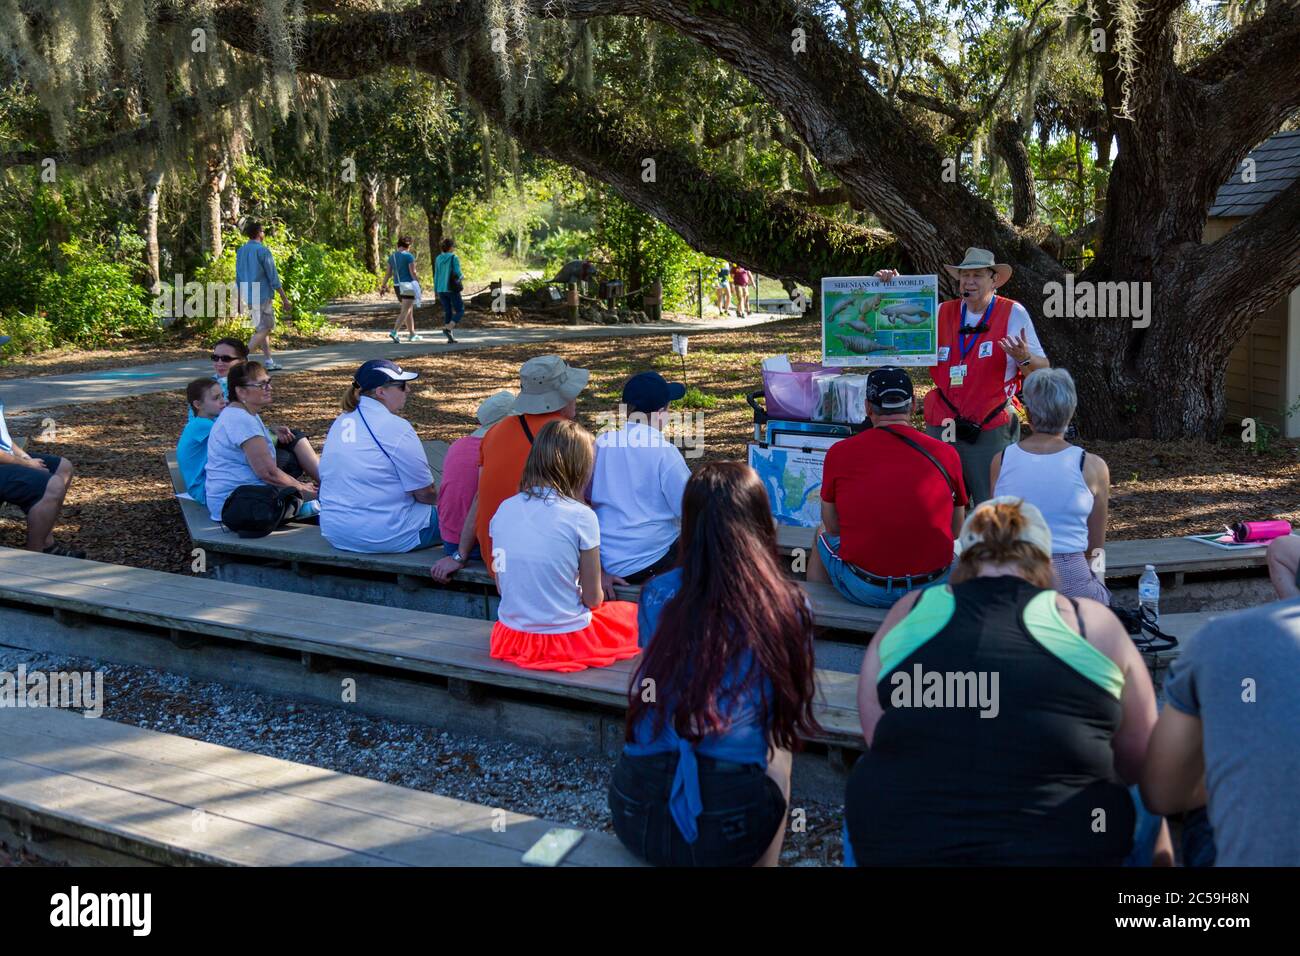 Ein Lehrer unterrichtet einen Outdoor-Kurs über Seekühe unter dem spanischen Moos einer lebenden Eiche während eines Programms im Manatee Park, Fort Myers, Florida, USA Stockfoto